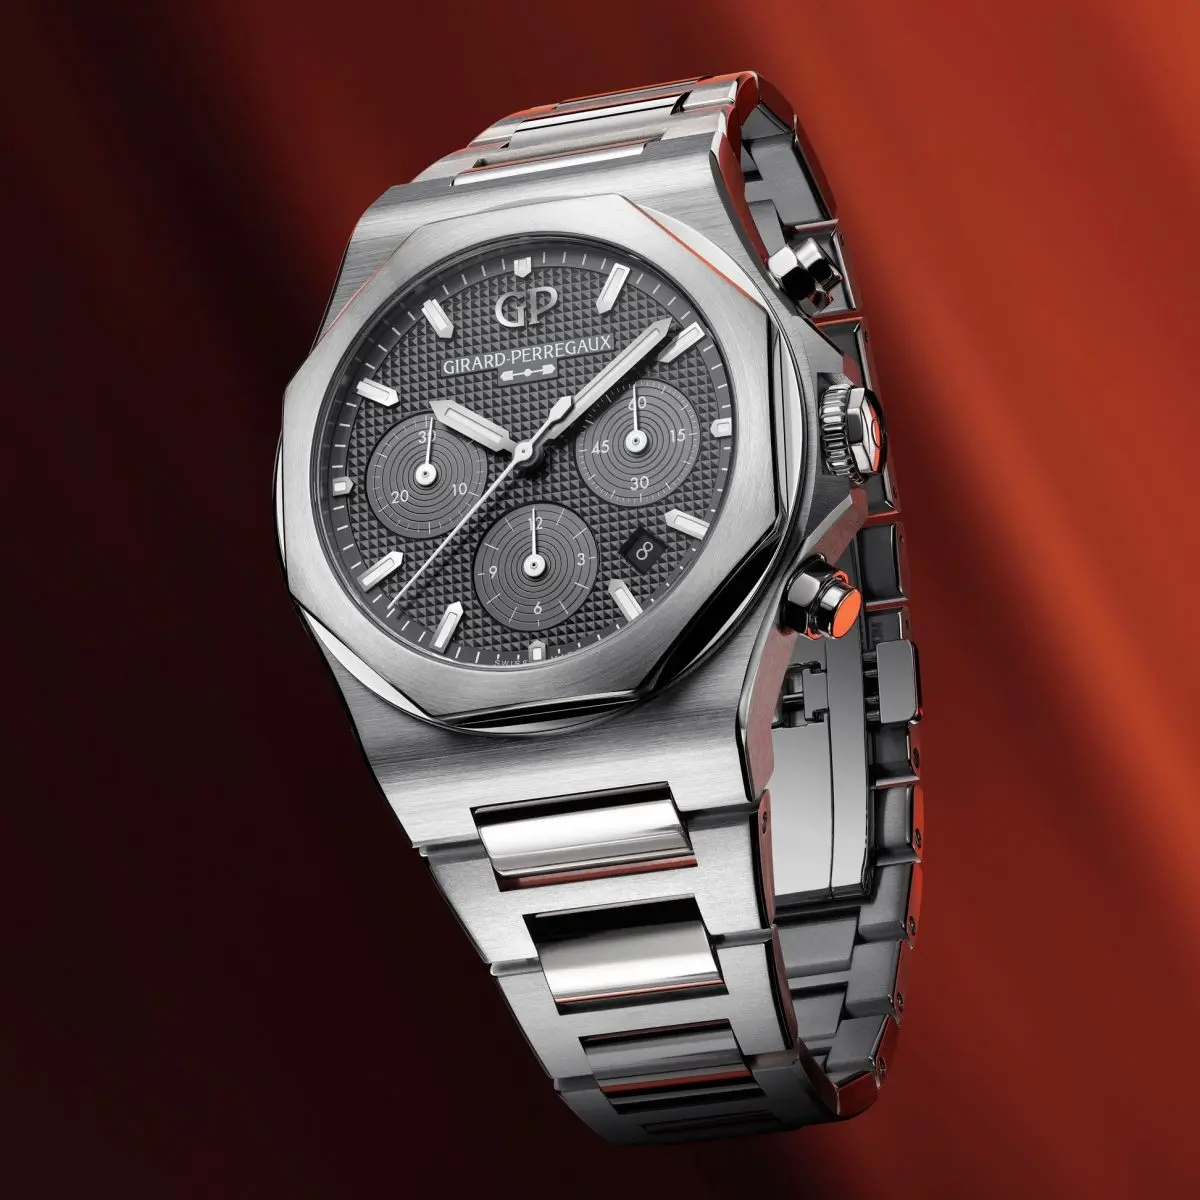 傑作コレクション「ロレアート」史上初となるグレード5チタンの腕時計を発表